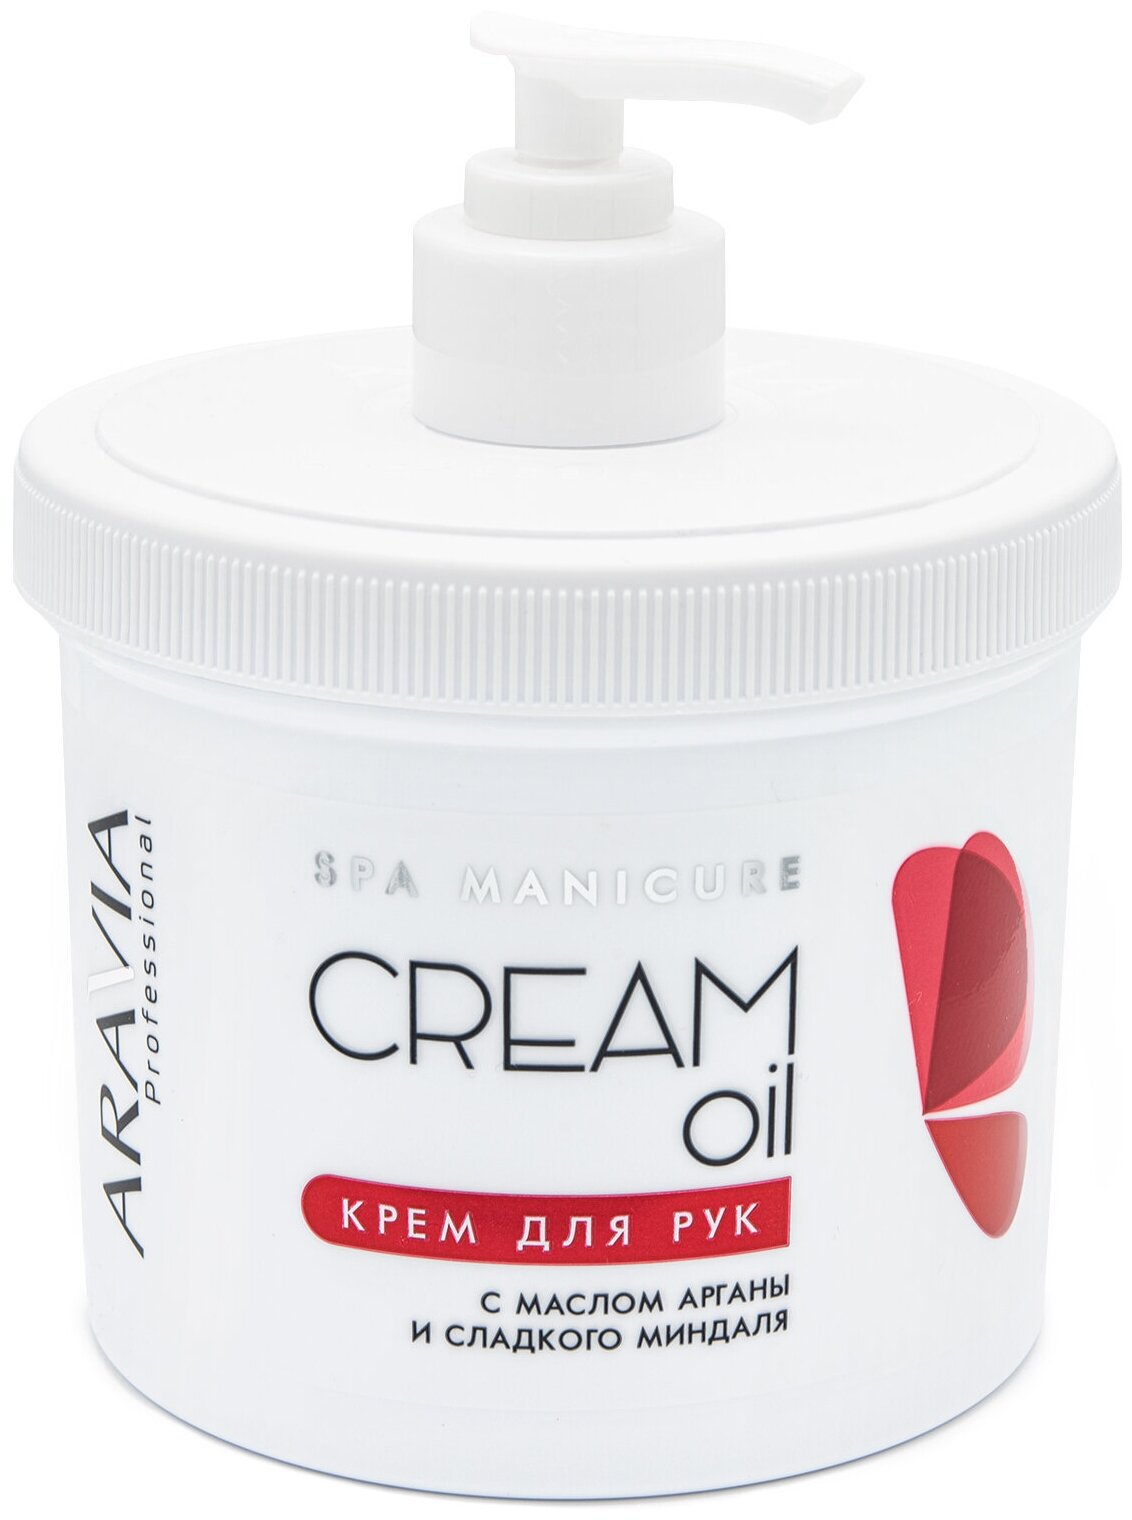 ARAVIA Крем для рук Professional Cream oil с маслом арганы и сладкого миндаля